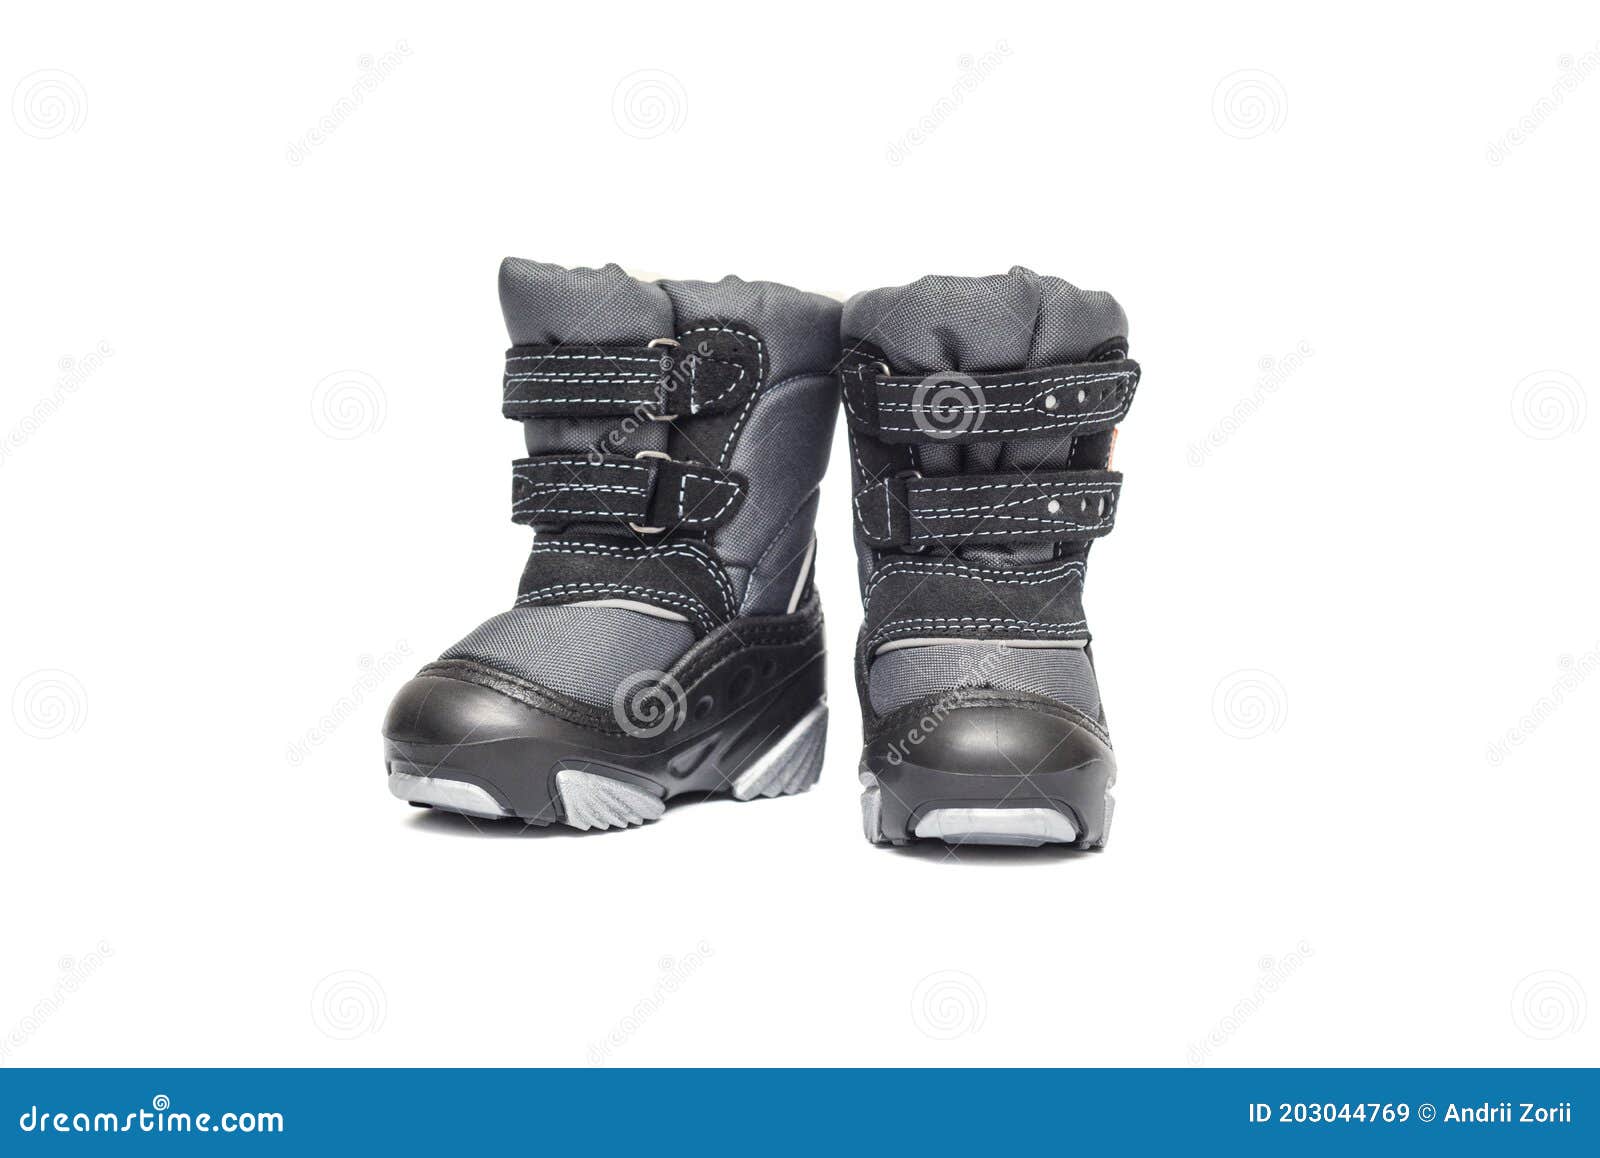 Zapatos De Invierno Para Niños Aislados En Un Blanco. Niños Botas De Invierno Aisladas En Fondo Blanco Imagen de archivo - Imagen de bebé, ocasional: 203044769